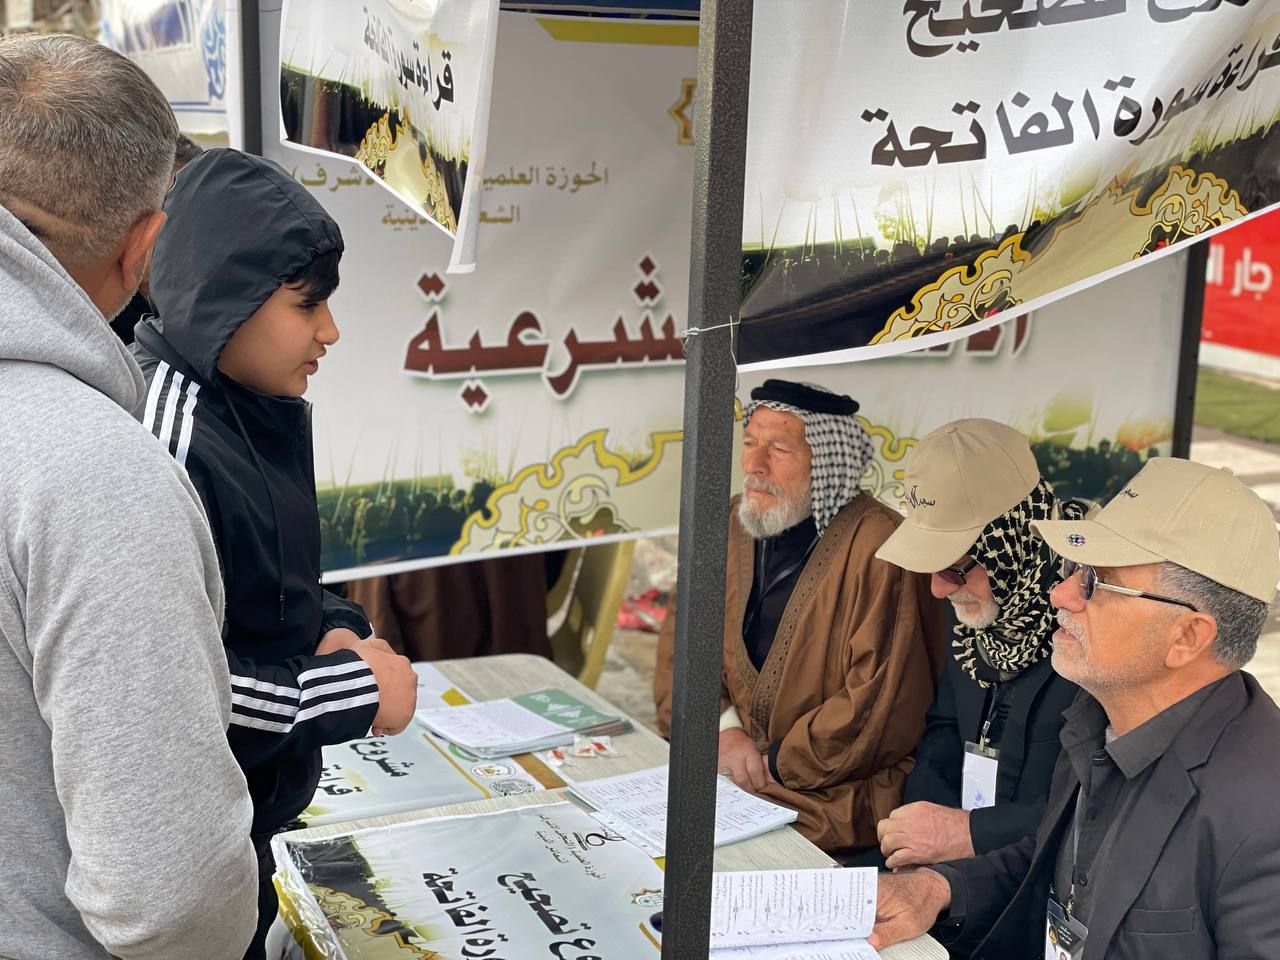 ضمن المشروع التبليغي للحوزة العلمية معهد القرآن الكريم يفتتح مراكز لتعليم القراءة الصحيحة في بغداد